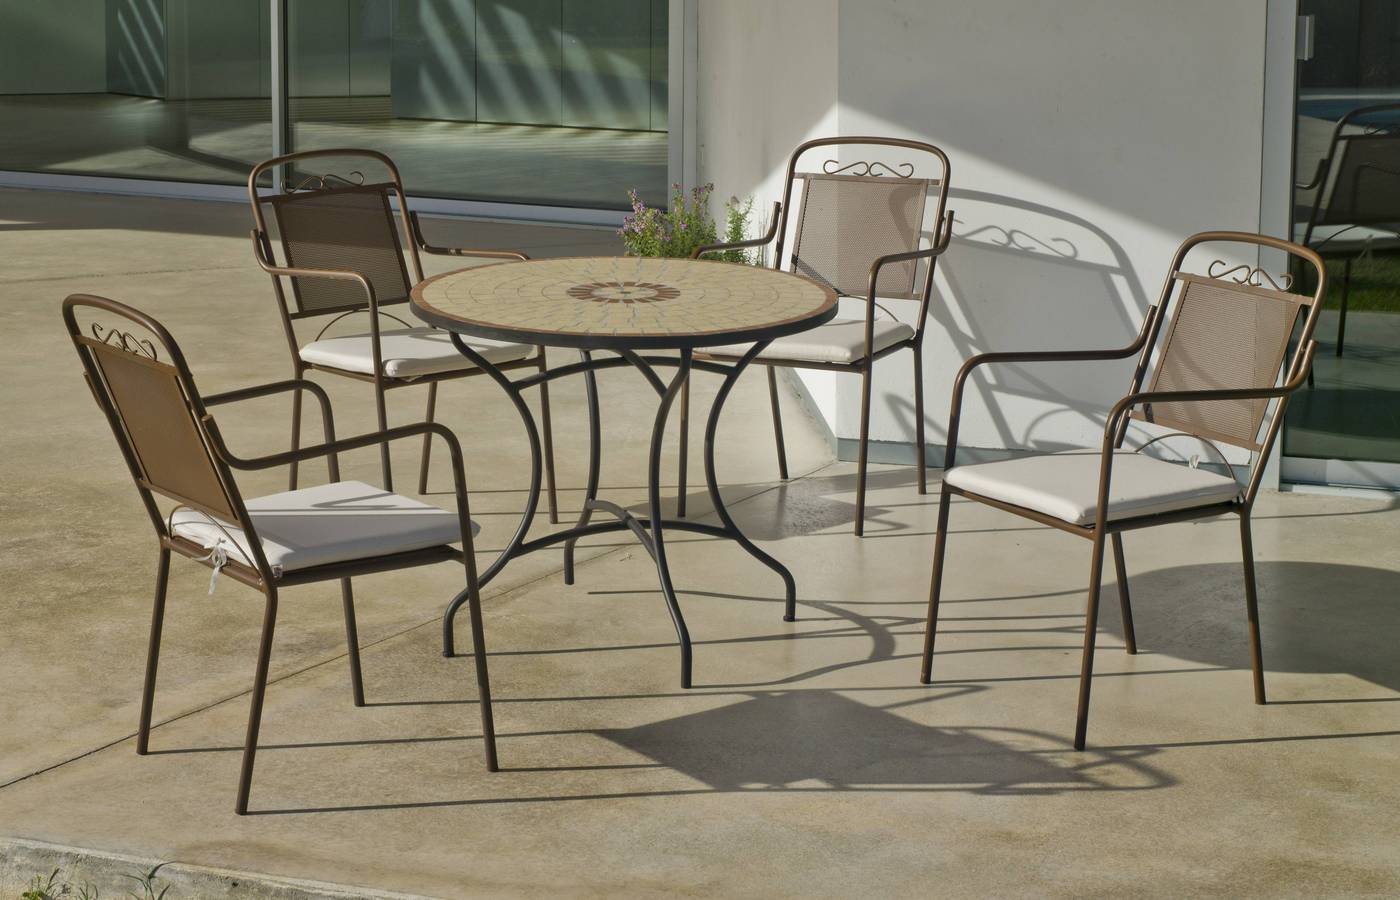 Conjunto para jardín y terraza de forja color bronce: 1 mesa redonda con tablero mosaico de 90 cm. + 4 sillones con cojines.